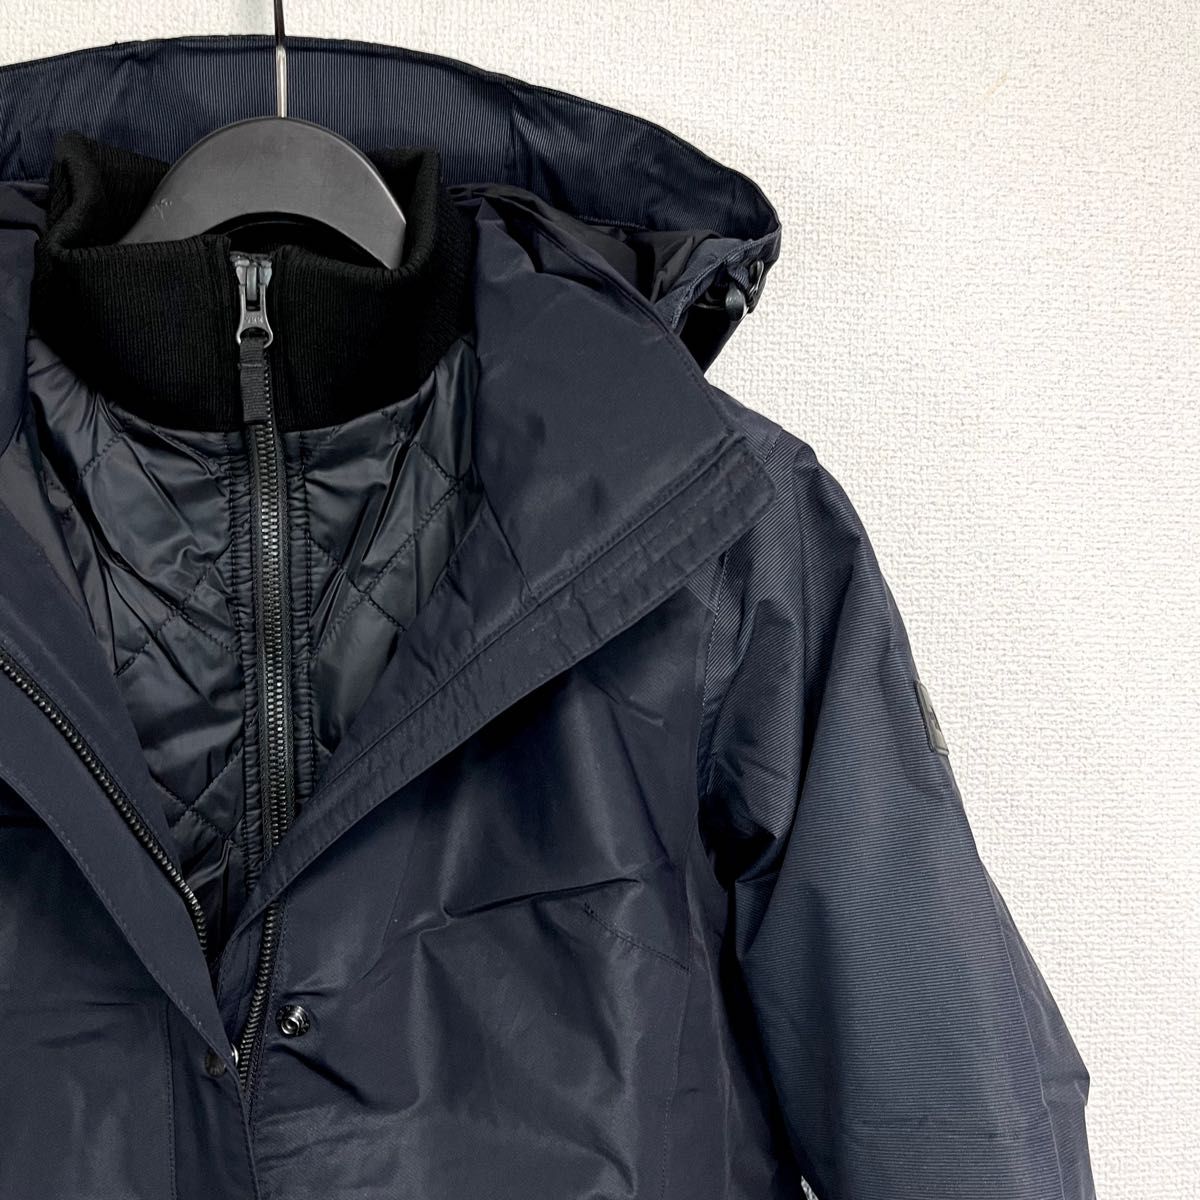 新品特価 ノースフェイス マウンテンコート 軽量極暖 中綿ジャケット付 防水 レディースS THE NORTH FACE ブラック